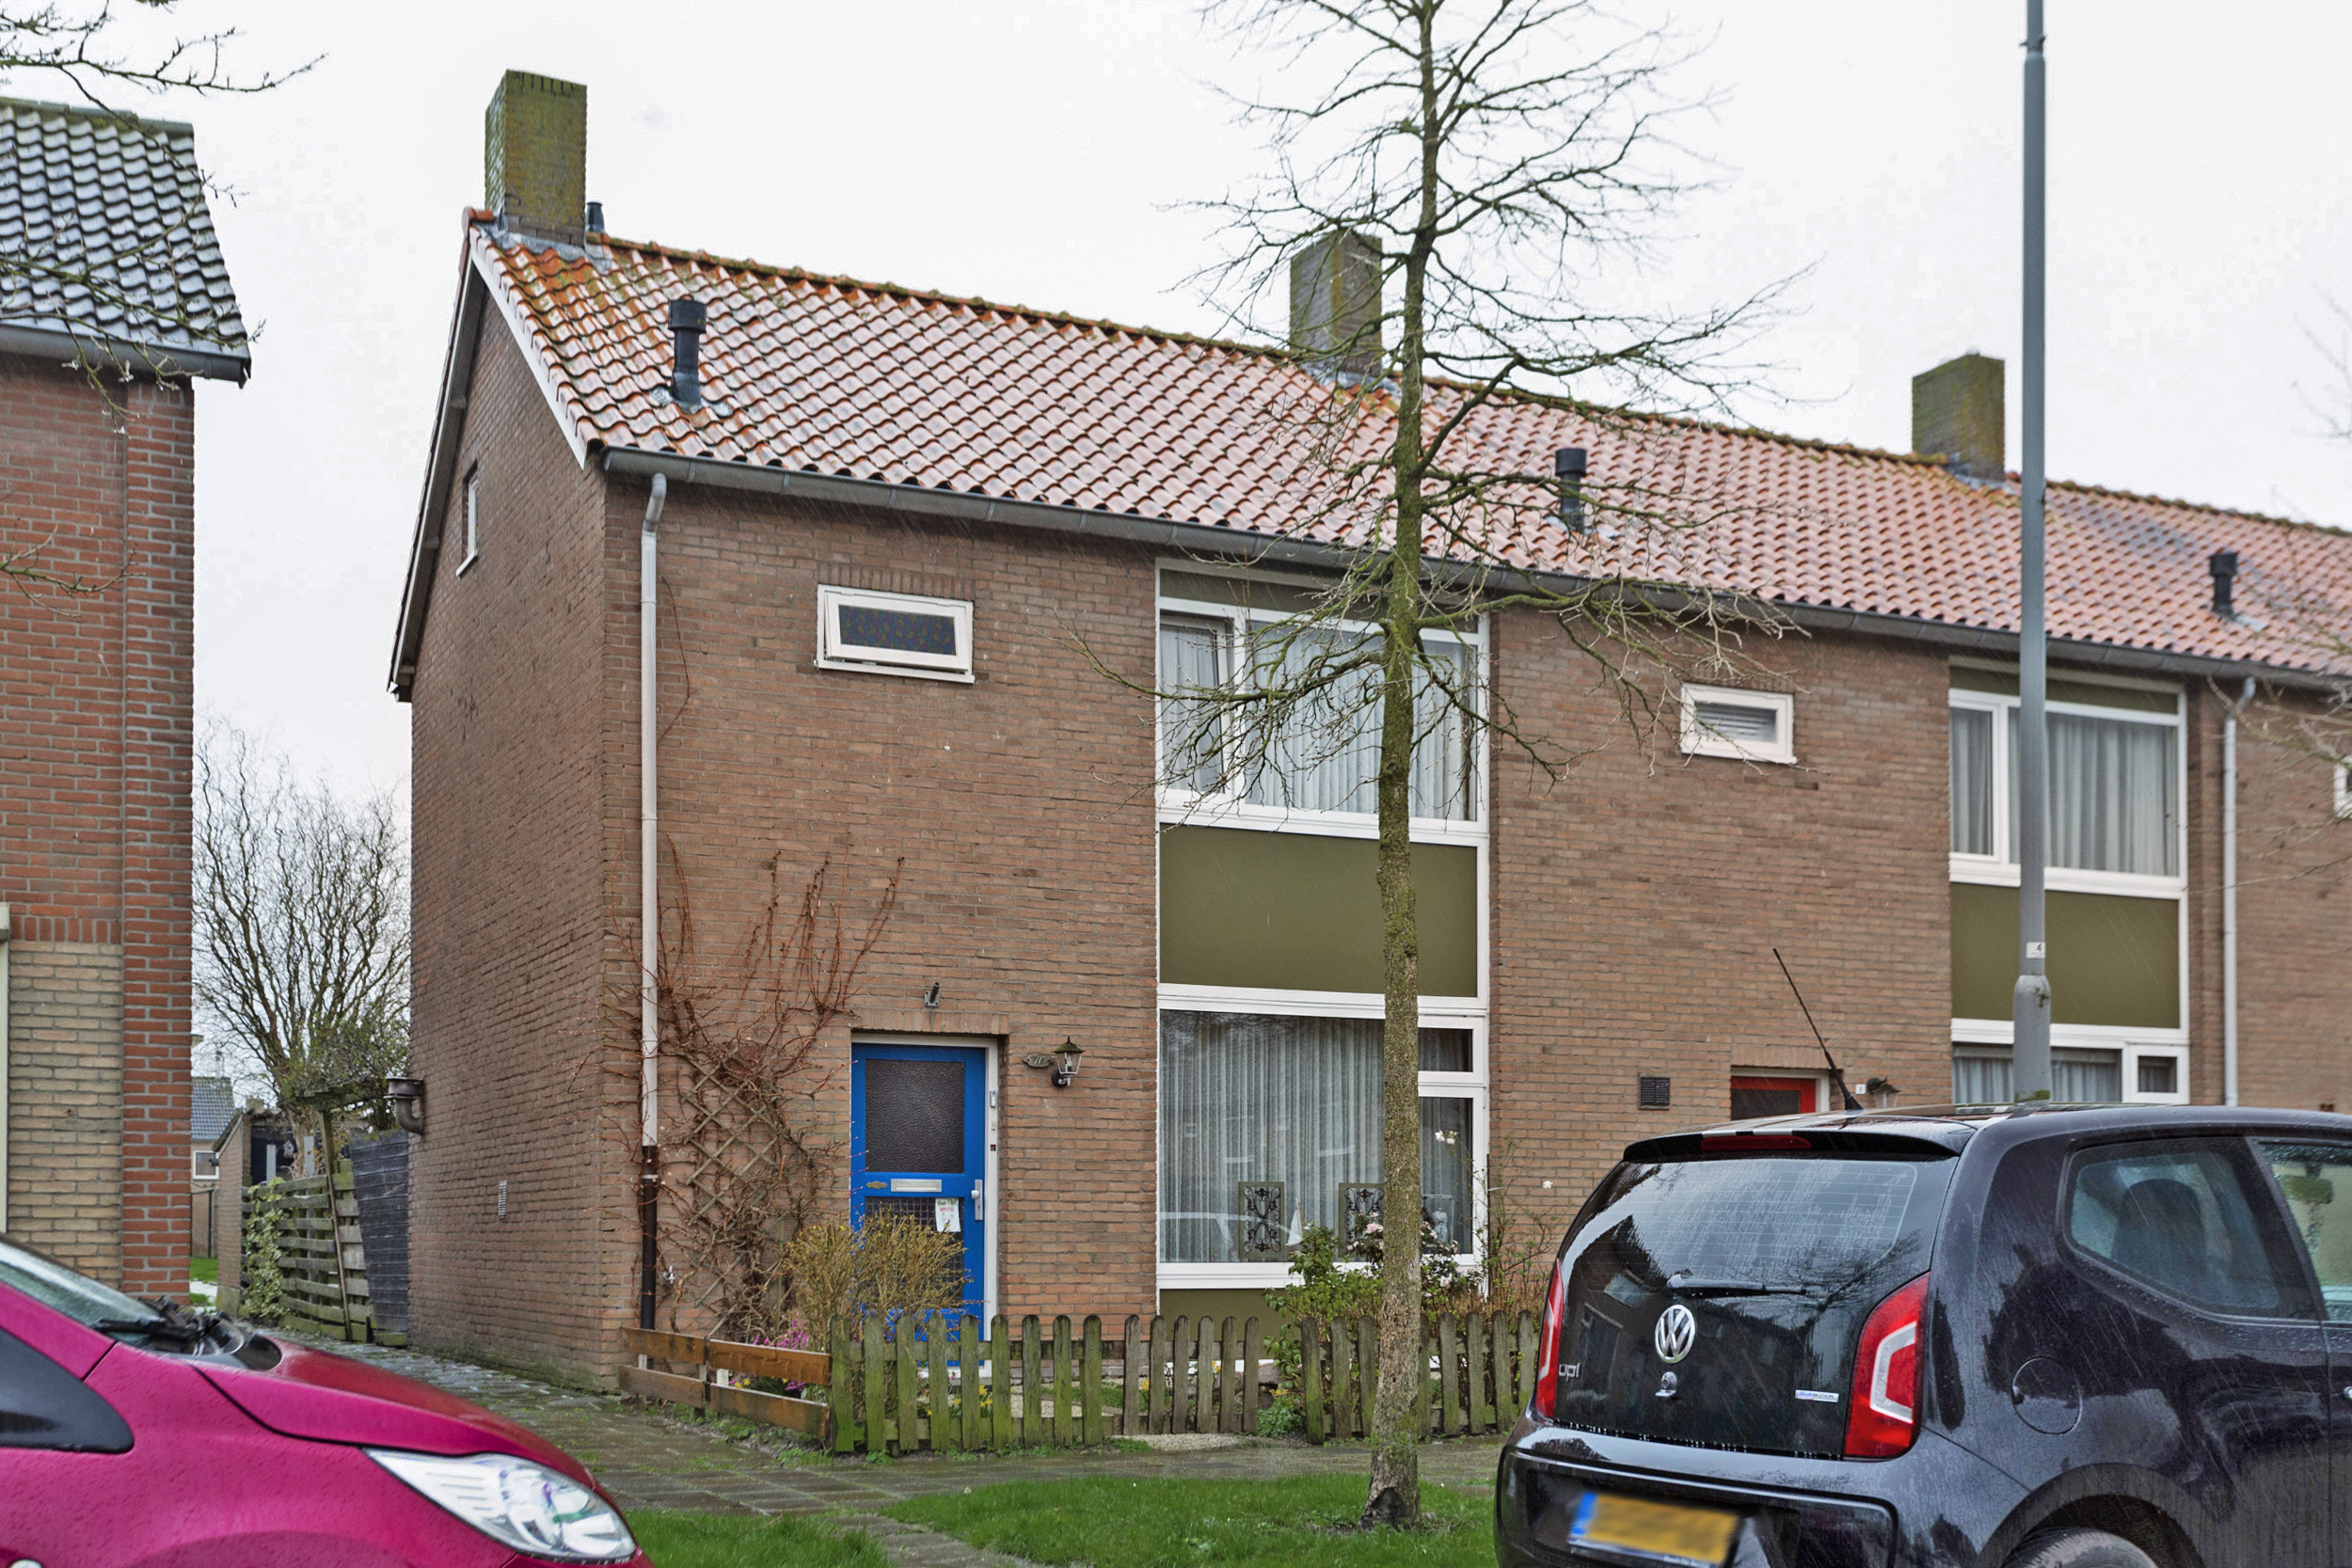 Abraham Kuijperstraat 10, 4926 BM Lage Zwaluwe, Nederland